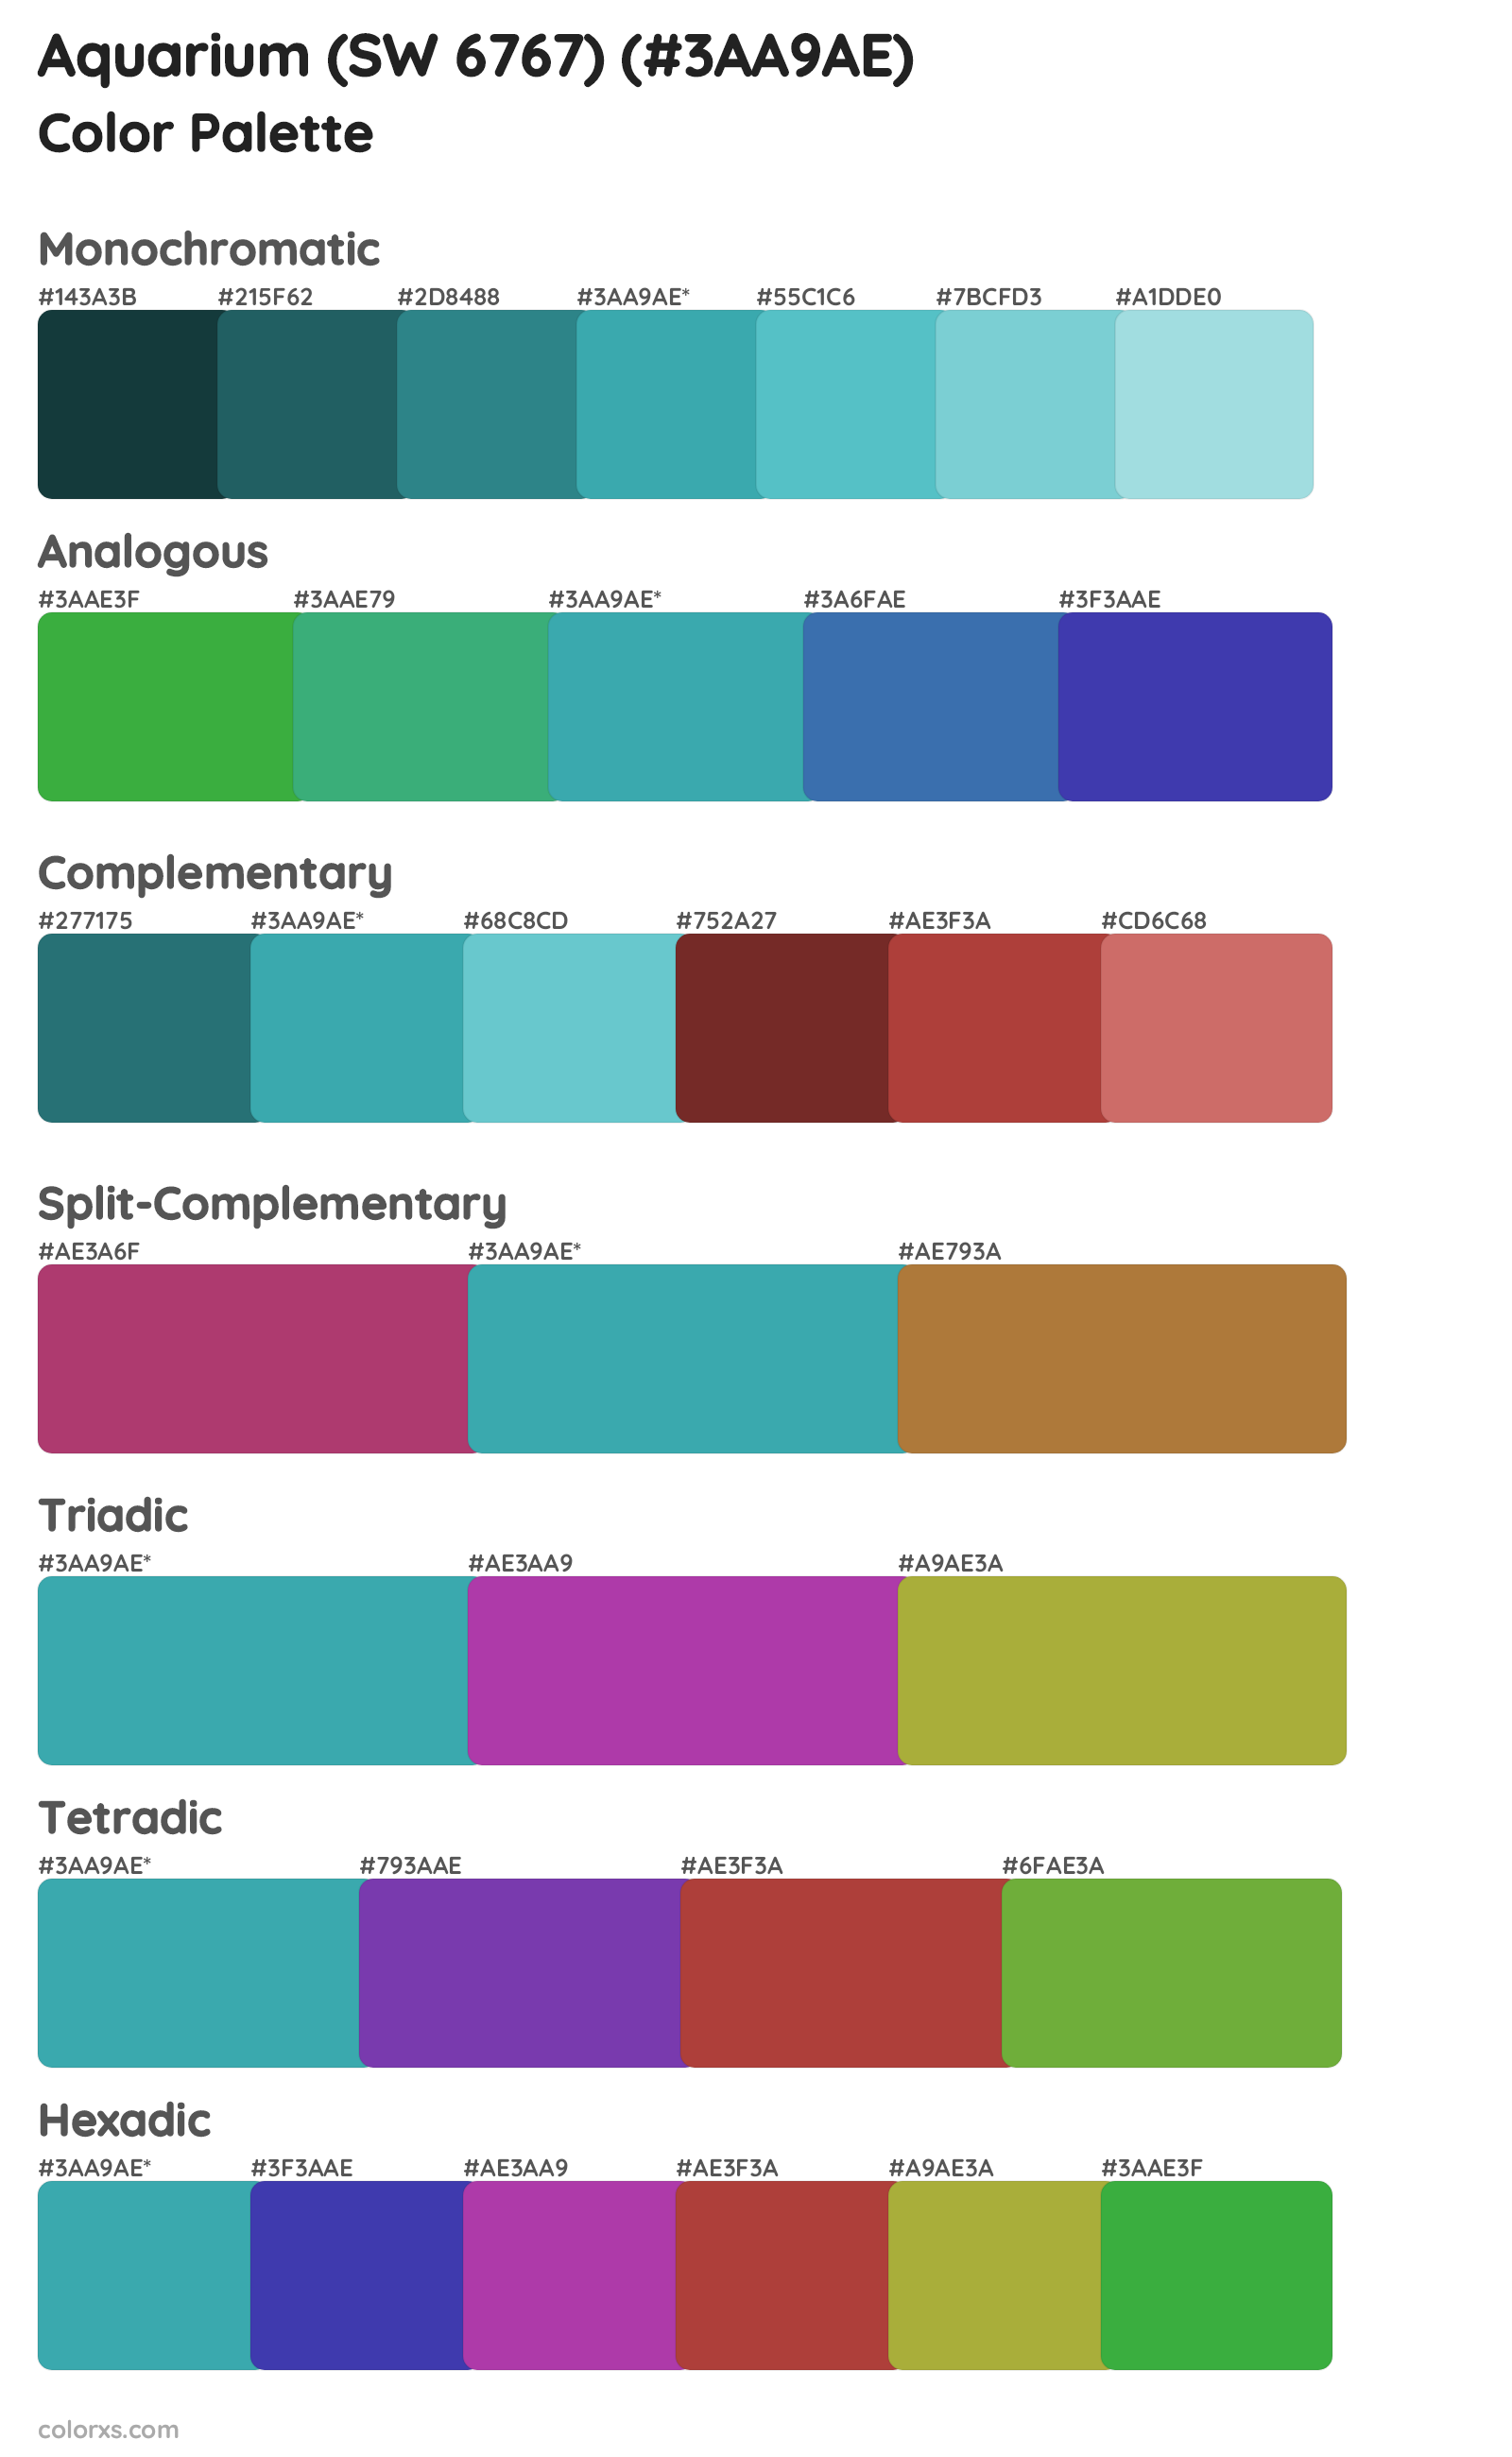 Aquarium (SW 6767) Color Scheme Palettes